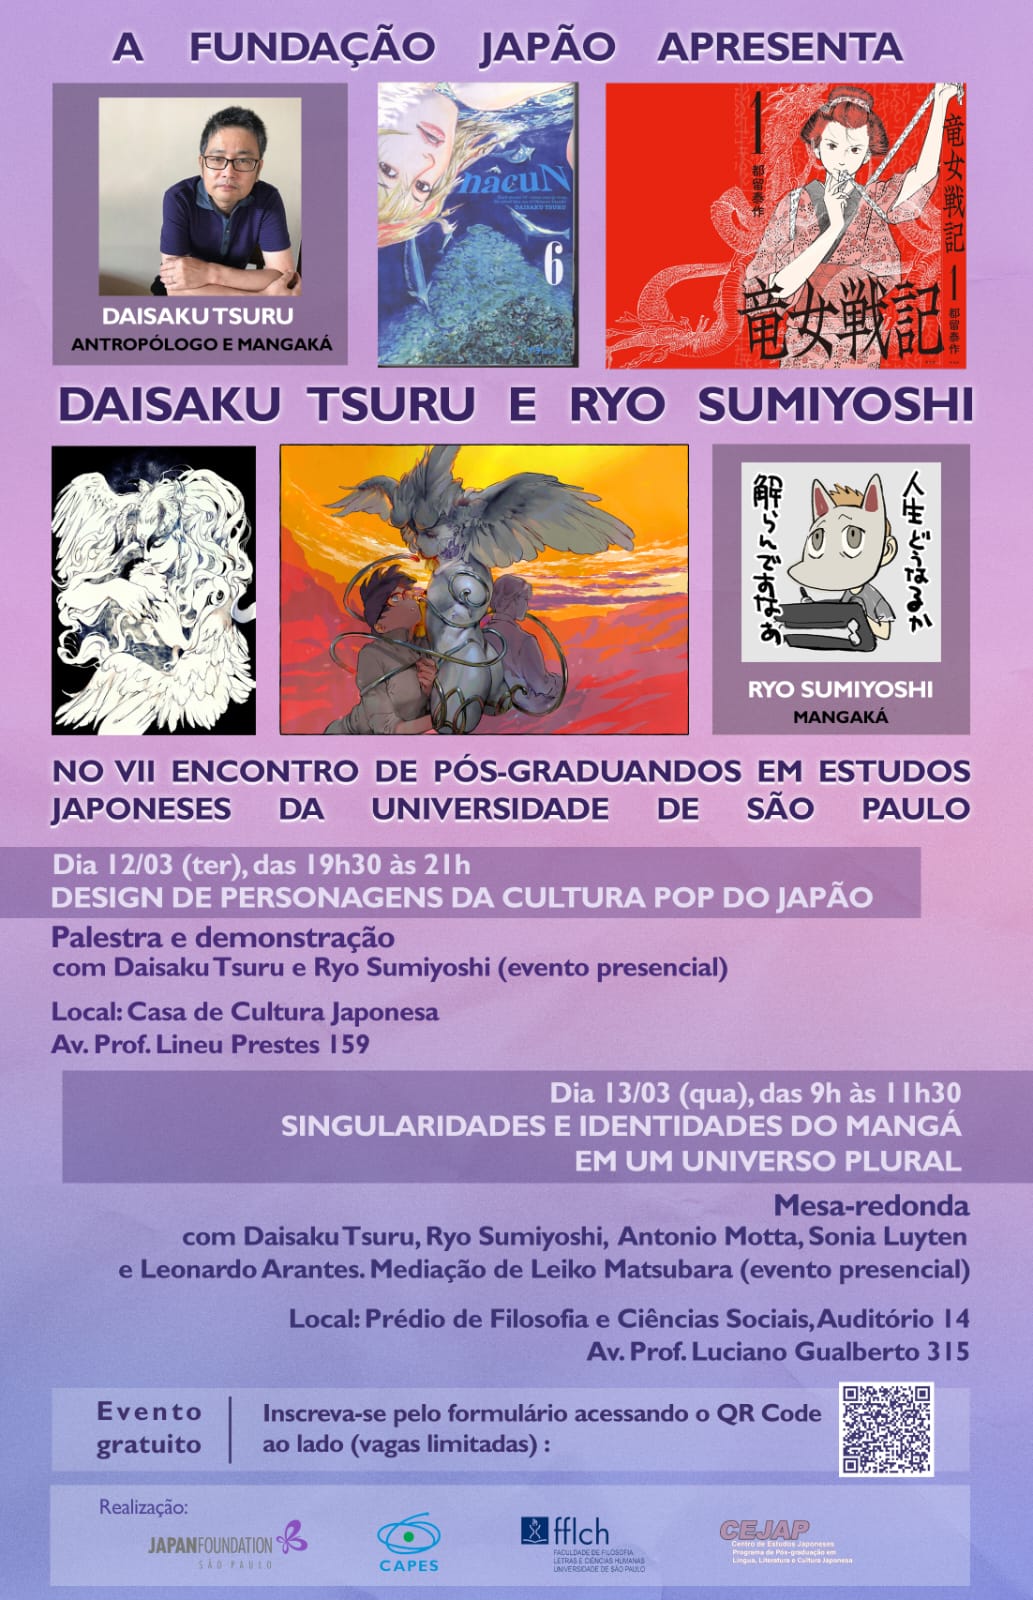 uma imagem com fundo roxo e um texto no topo escrito 'a fundação japão apresenta daisaku tsuru e resenta ryo sumiyoshi' entre imagens que representam os autores.